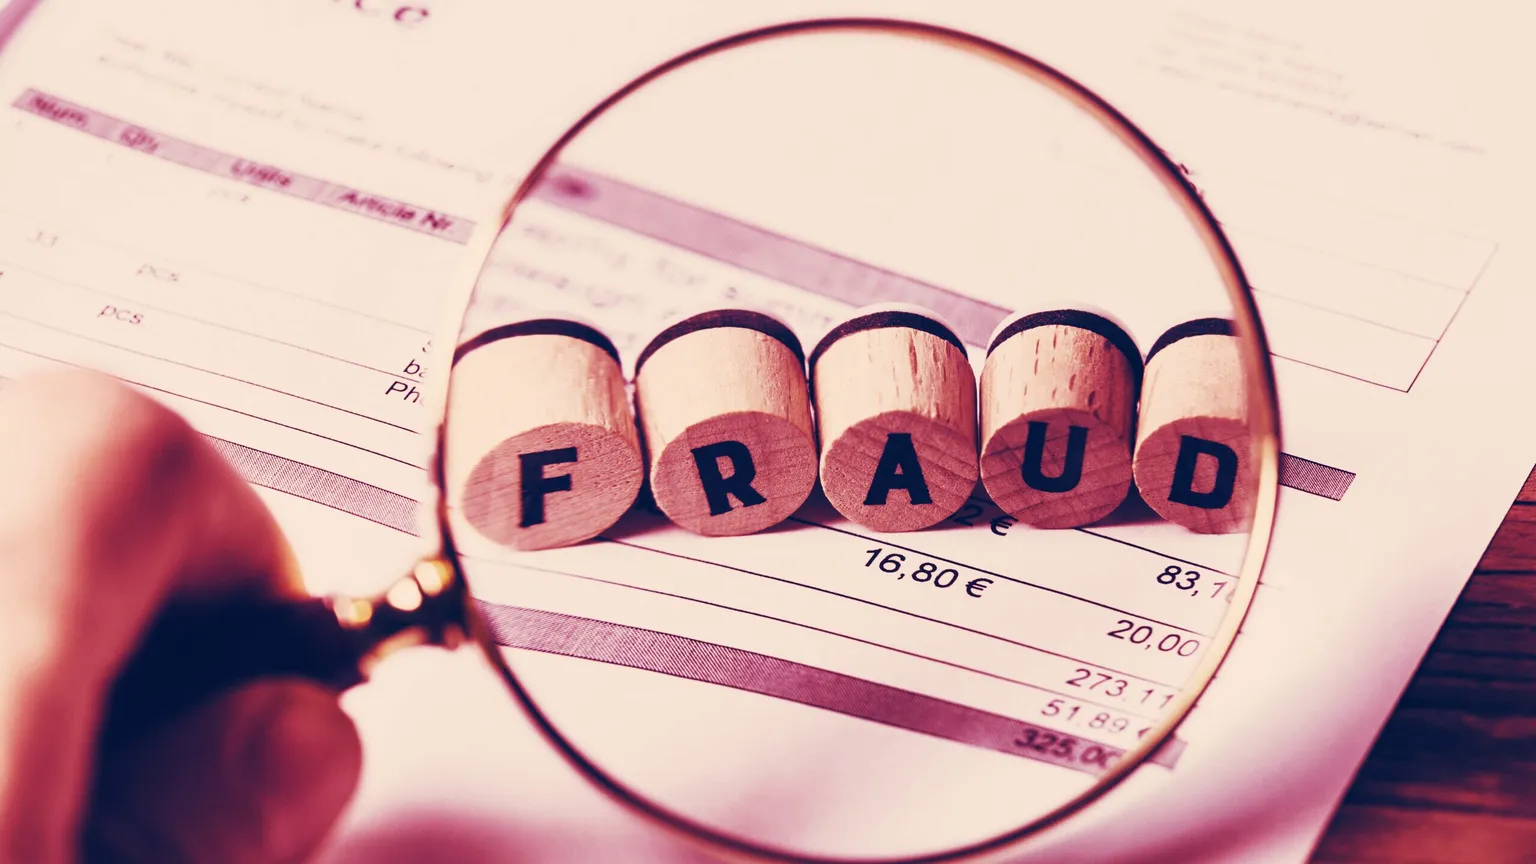 Los estafadores de Maryland robaron 28 millones de dólares promocionando inversiones en criptomonedas. Imagen: Shutterstock